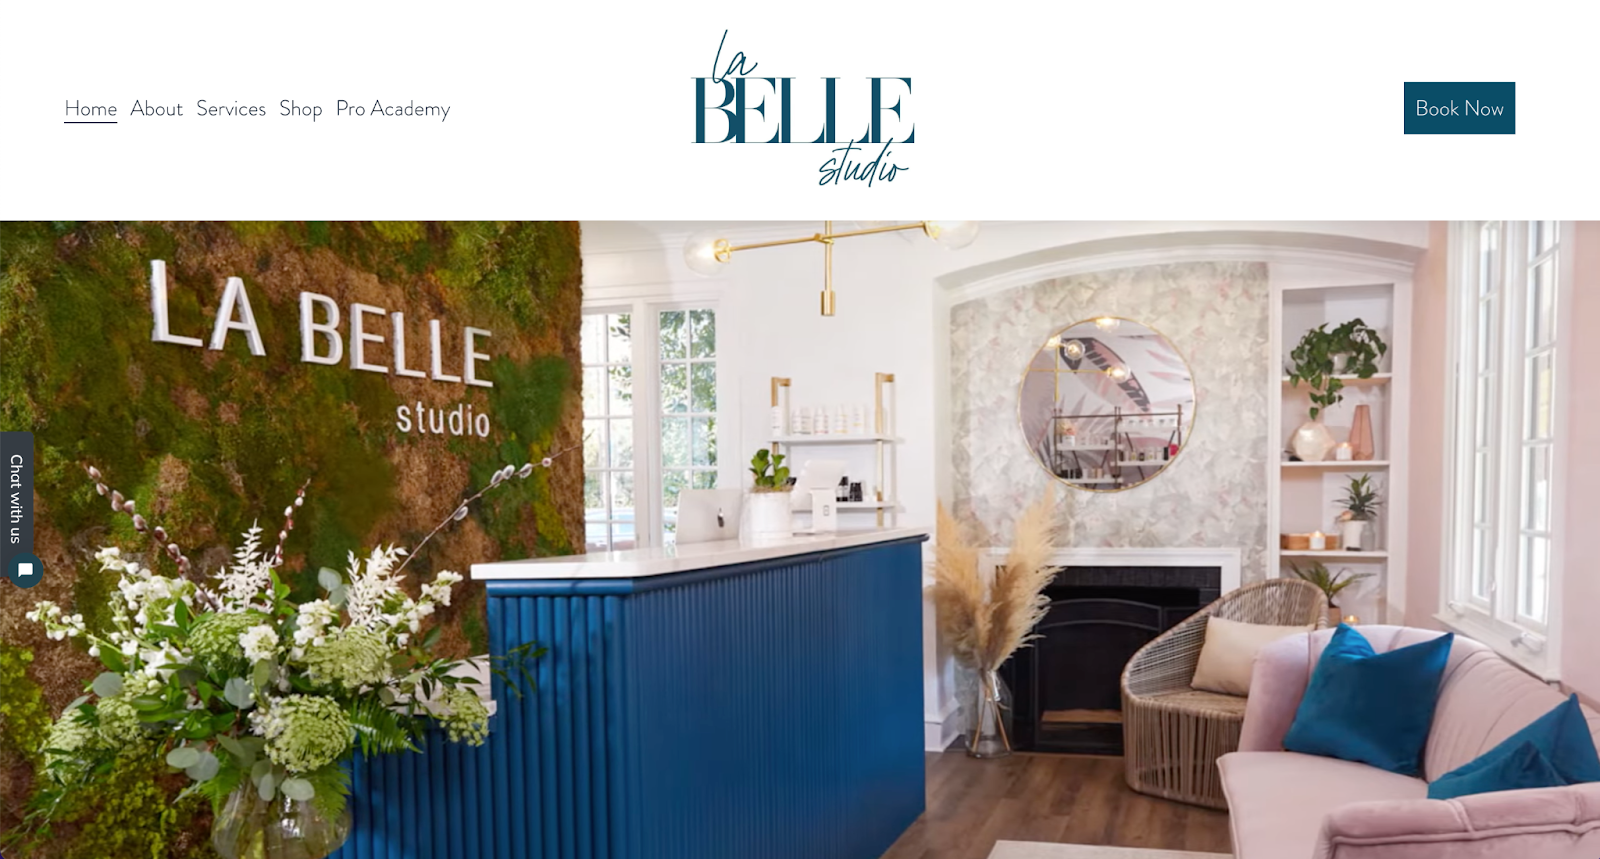 spa website examples, la belle studio